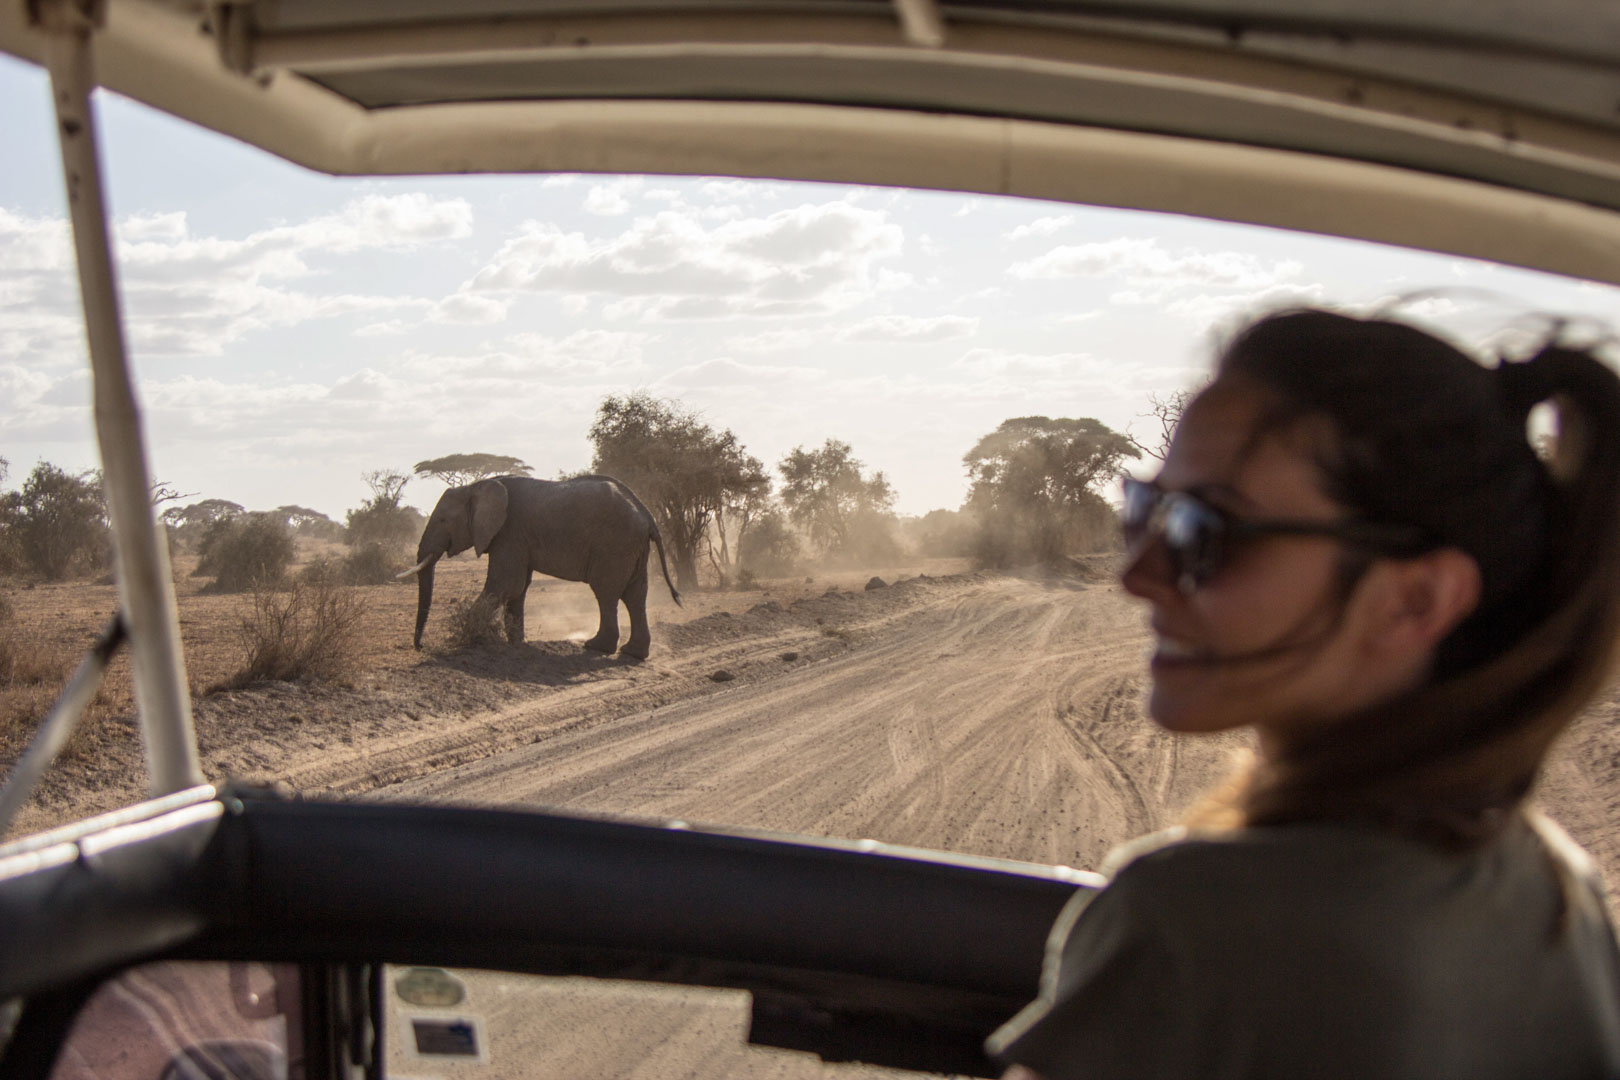 Elefante cruzando el camino, Parque Nacional de Amboseli, Kenia